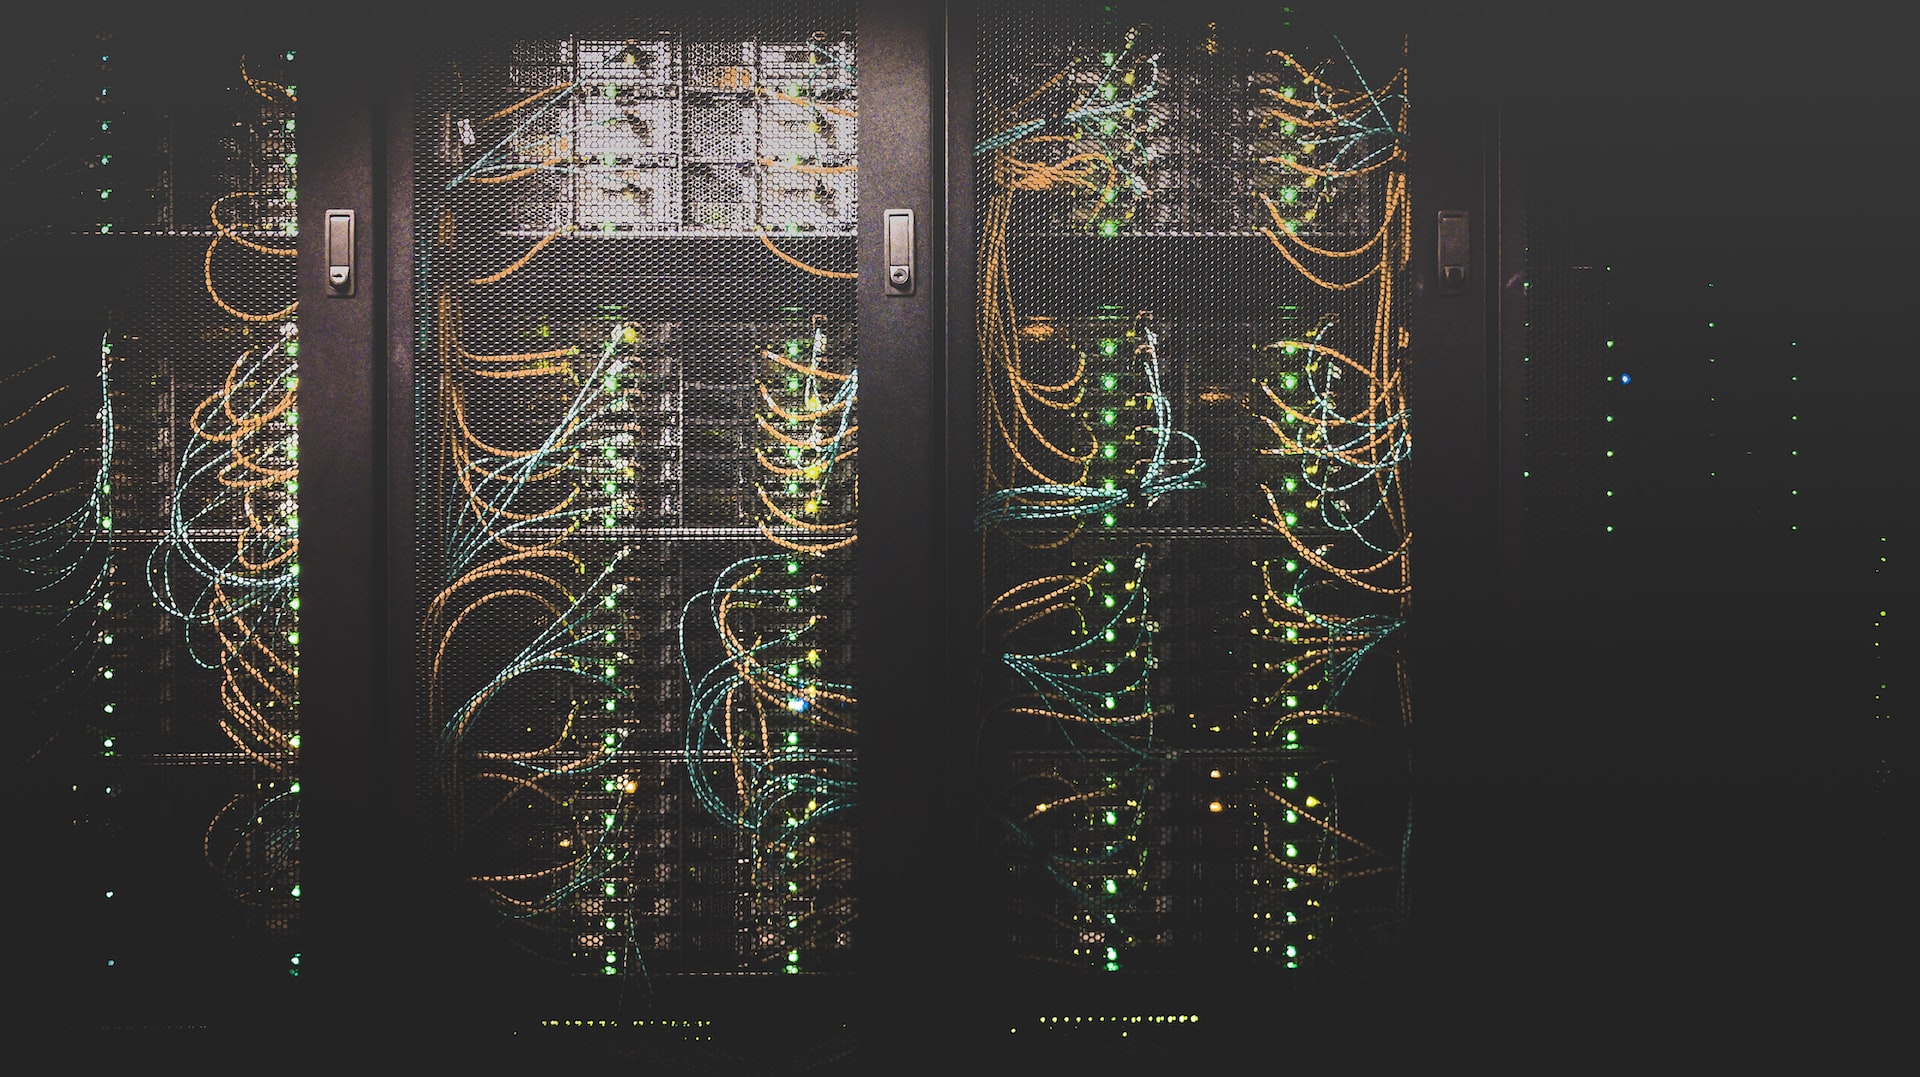 Server racks in a data center